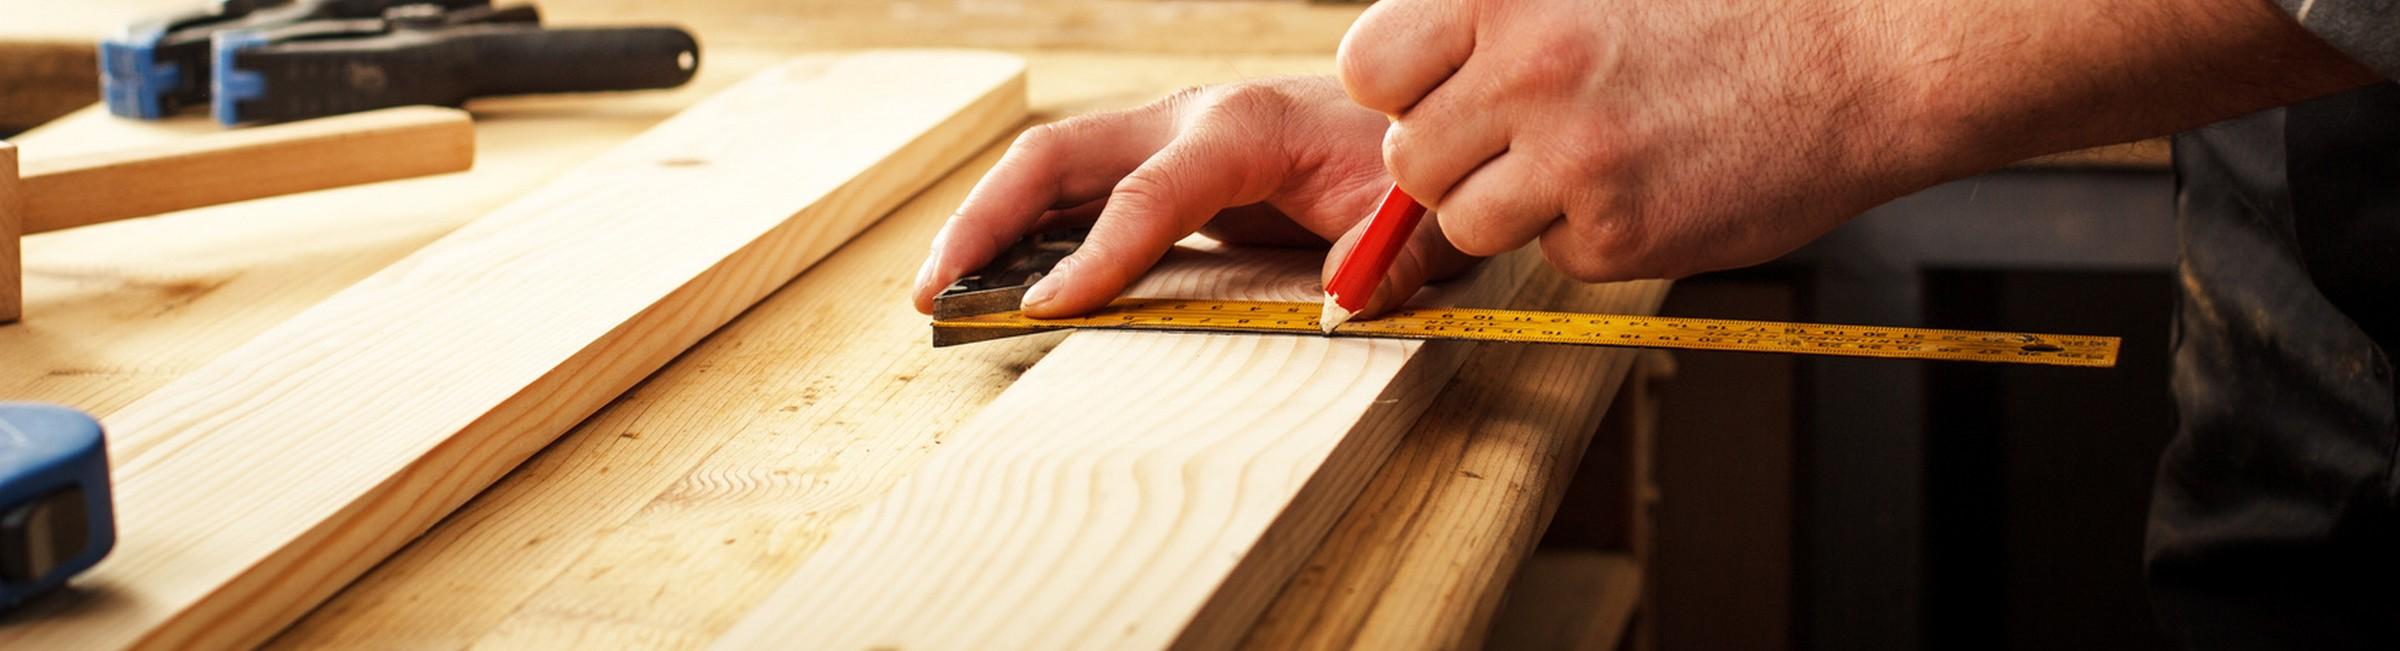 Menuisier travaillant sur une planche en bois